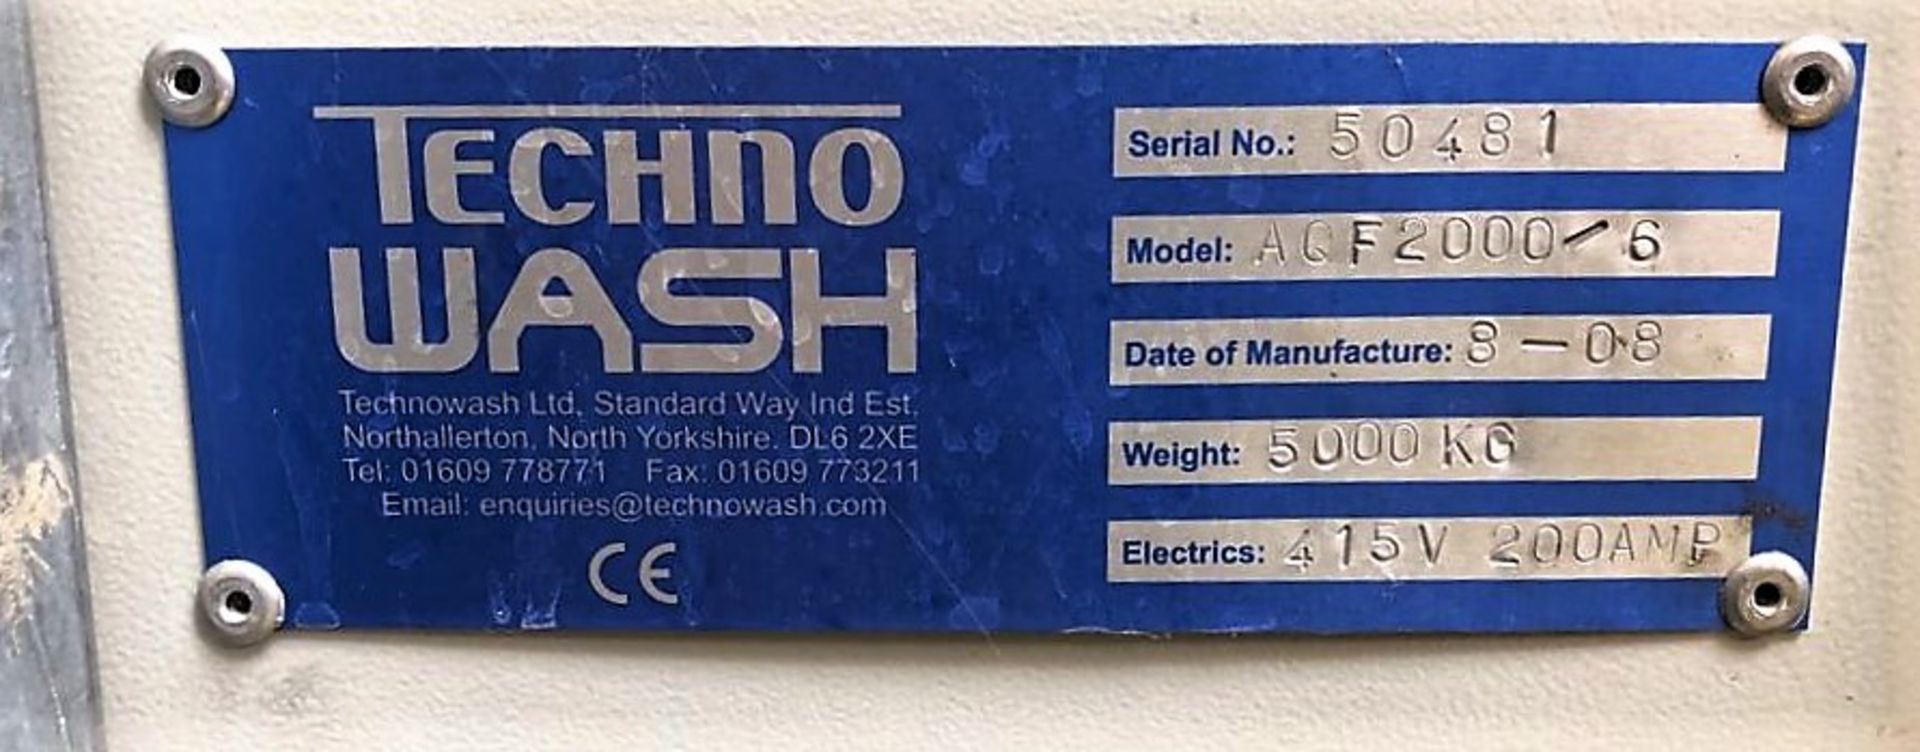 Technowash AQF2000/6 Parts Washer. - Image 6 of 7